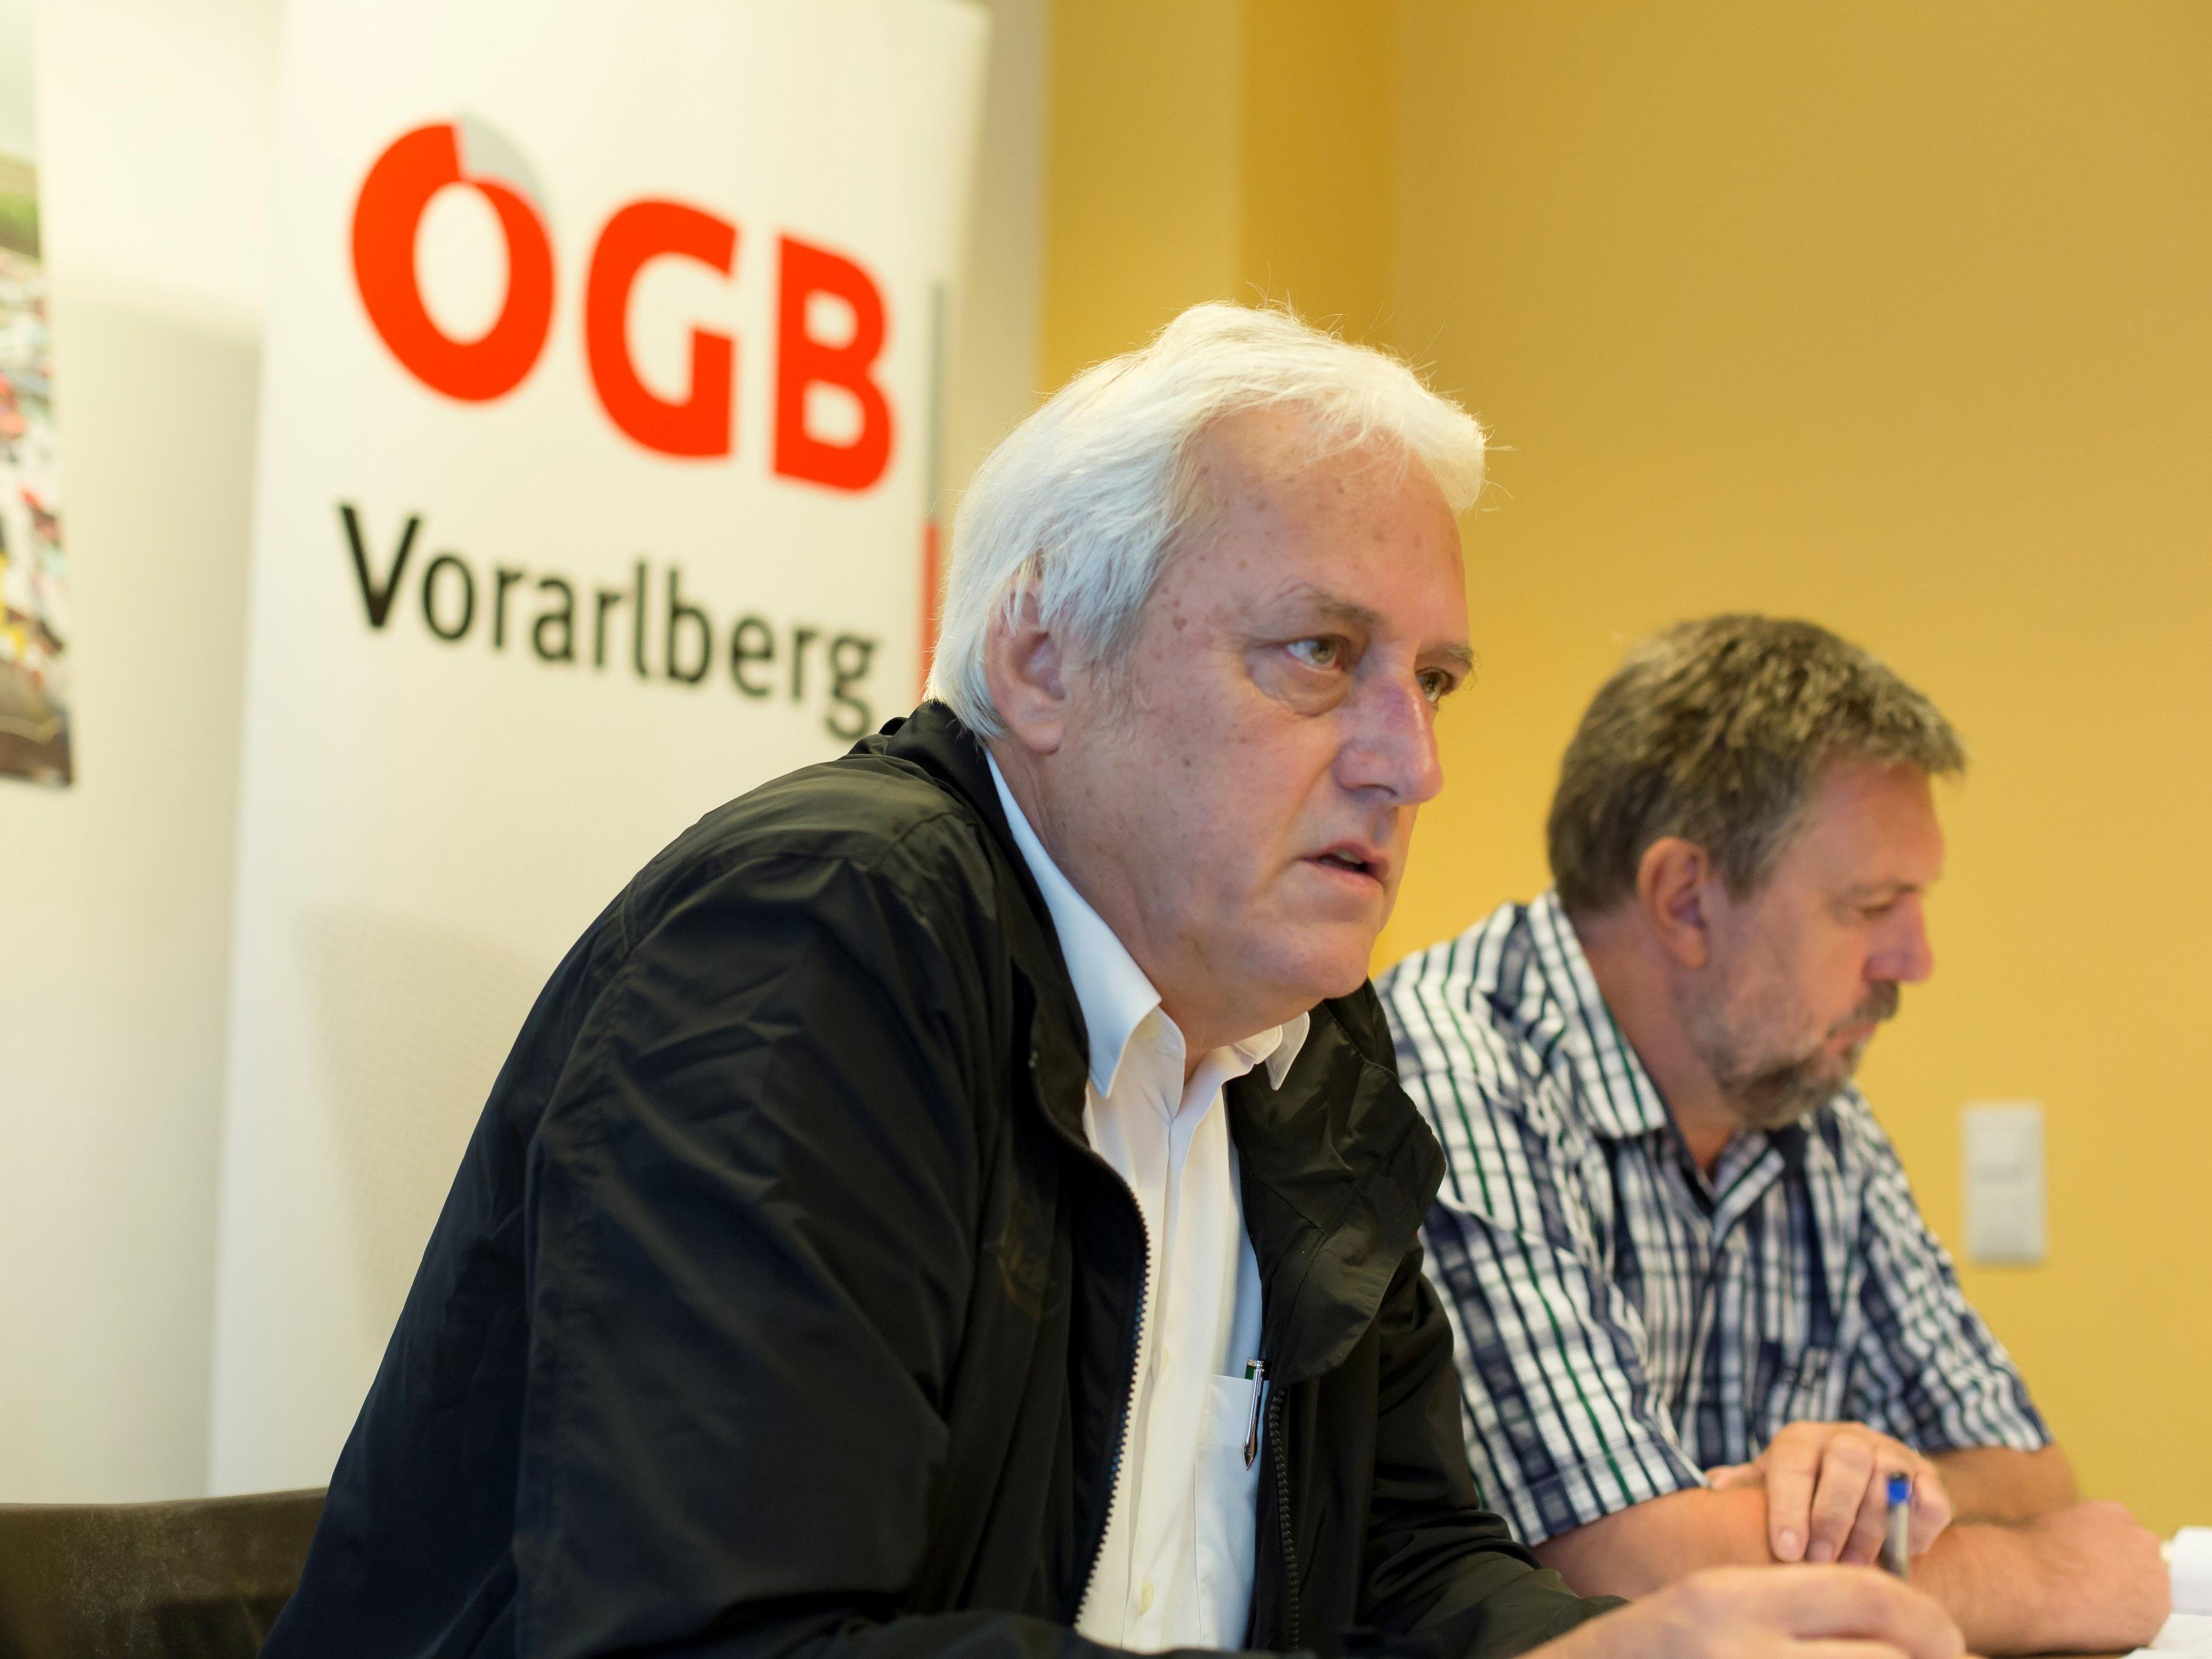 Norbert Loacker wurde auf der Landeskonferenz des ÖGB erneut zum Vorarlberger Landesvorsitzenden des Gewerkschaftsbundes gewählt.